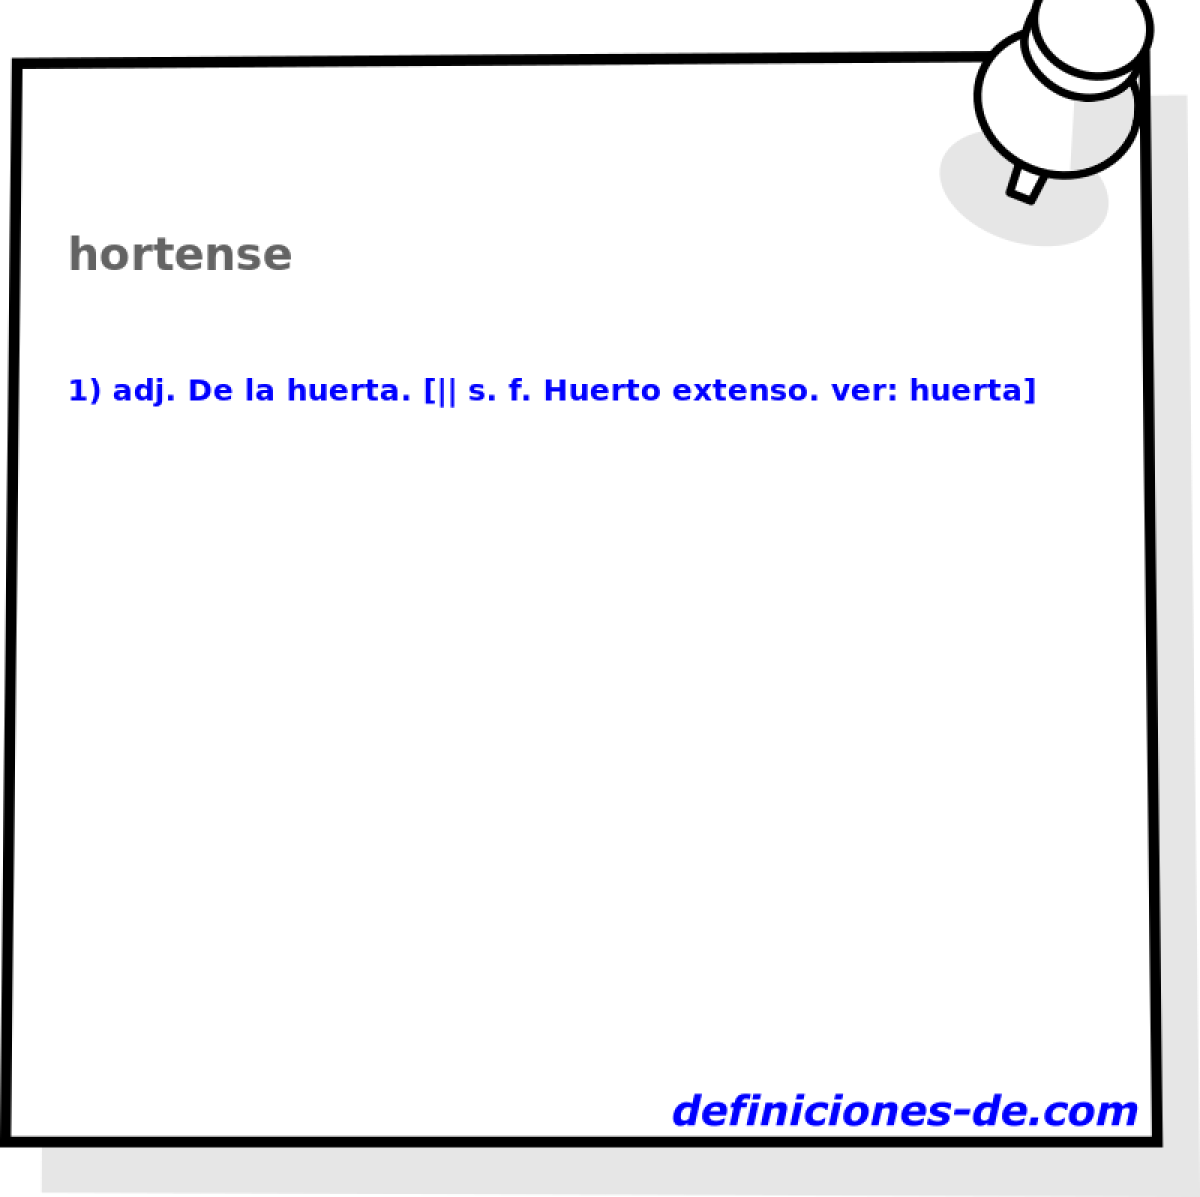 hortense 